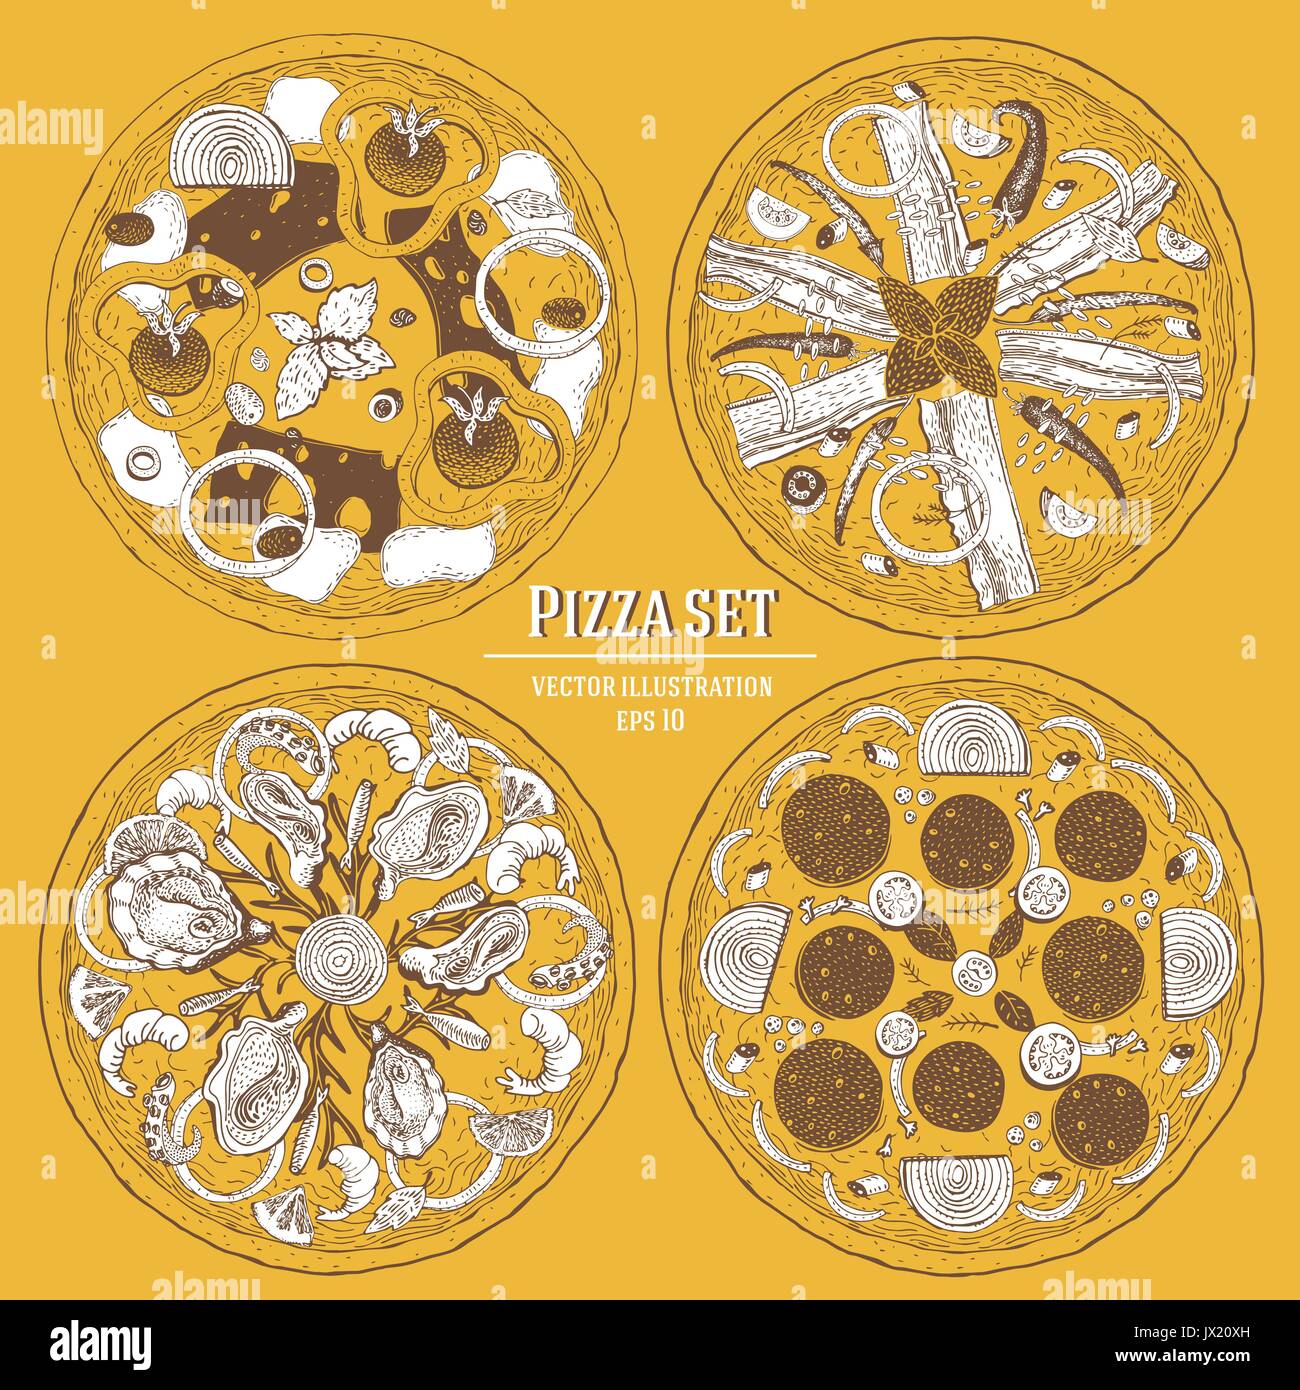 Pizza italienne hand drawn vector illustration set. Peut être utiliser pour pizzeria, café, restaurant. Illustration de Vecteur